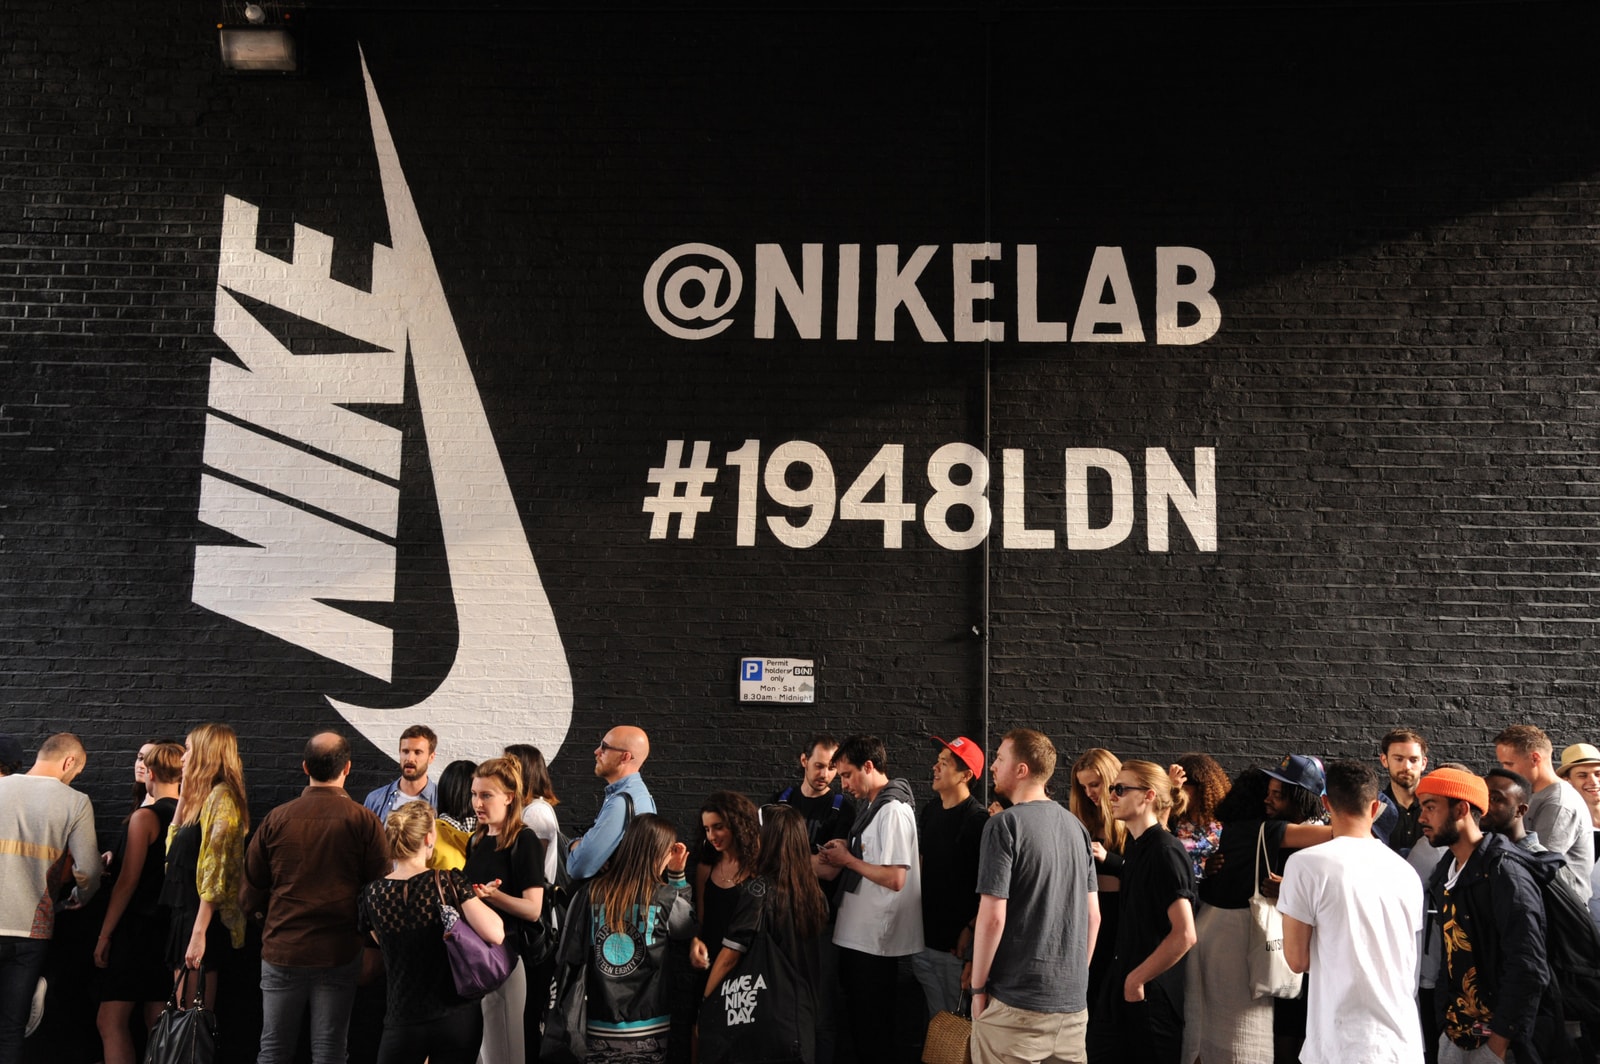 功成身退？回顧 NikeLab 在過去近十年間的發展變遷